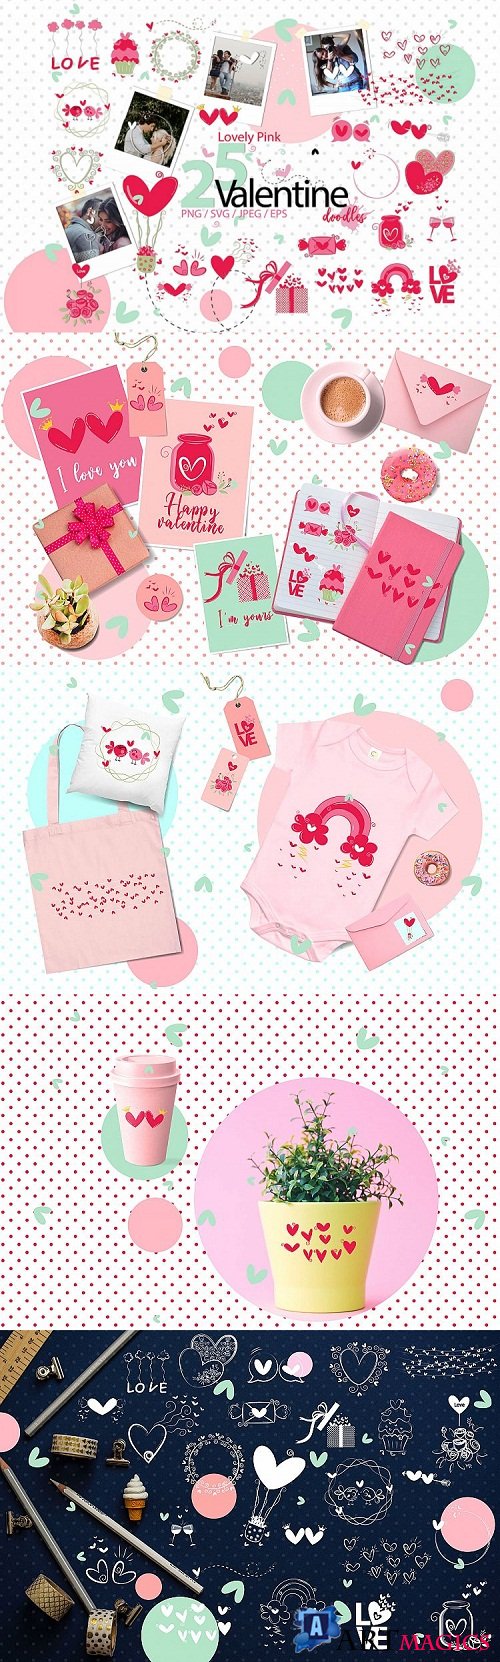 designbundles - Lovely Pink valentine doodles -198670